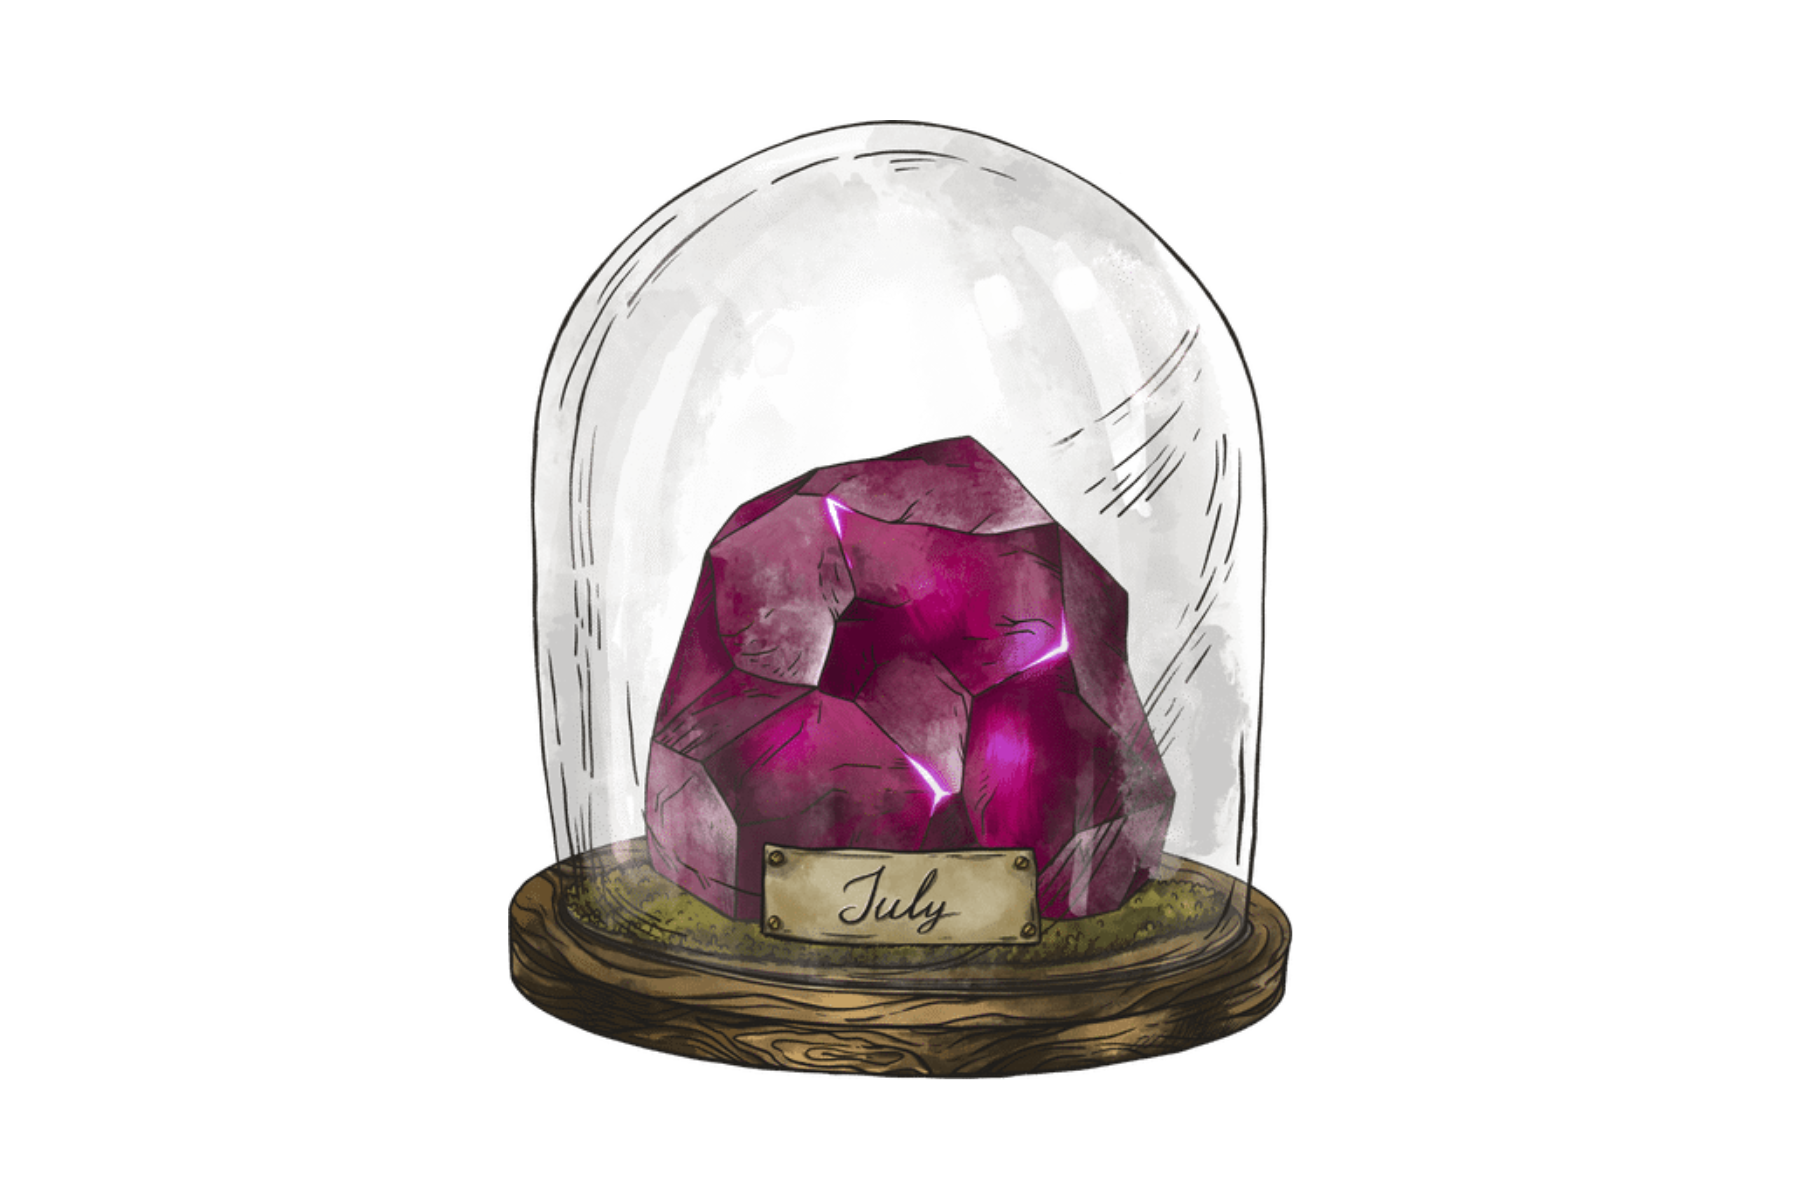 A glass jar with a Ruby birthstone